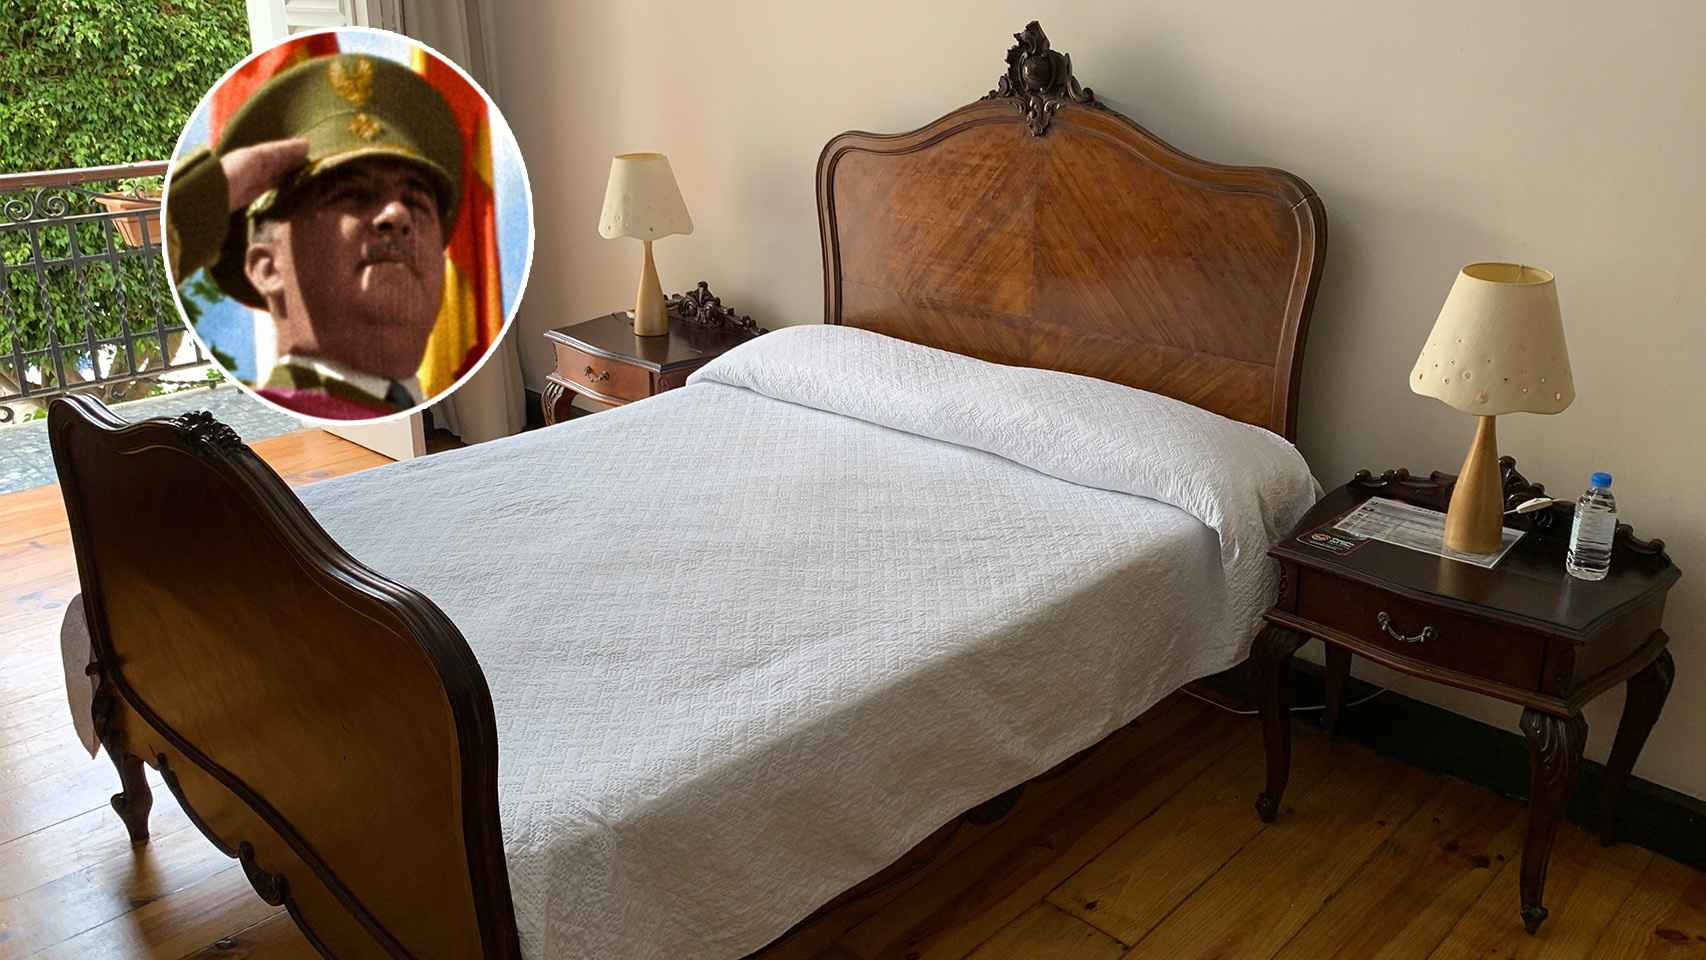 La cama del Hotel Madrid, en Las Palmas de Gran Canaria, donde durmió Franco el día que estalló la sublevación.